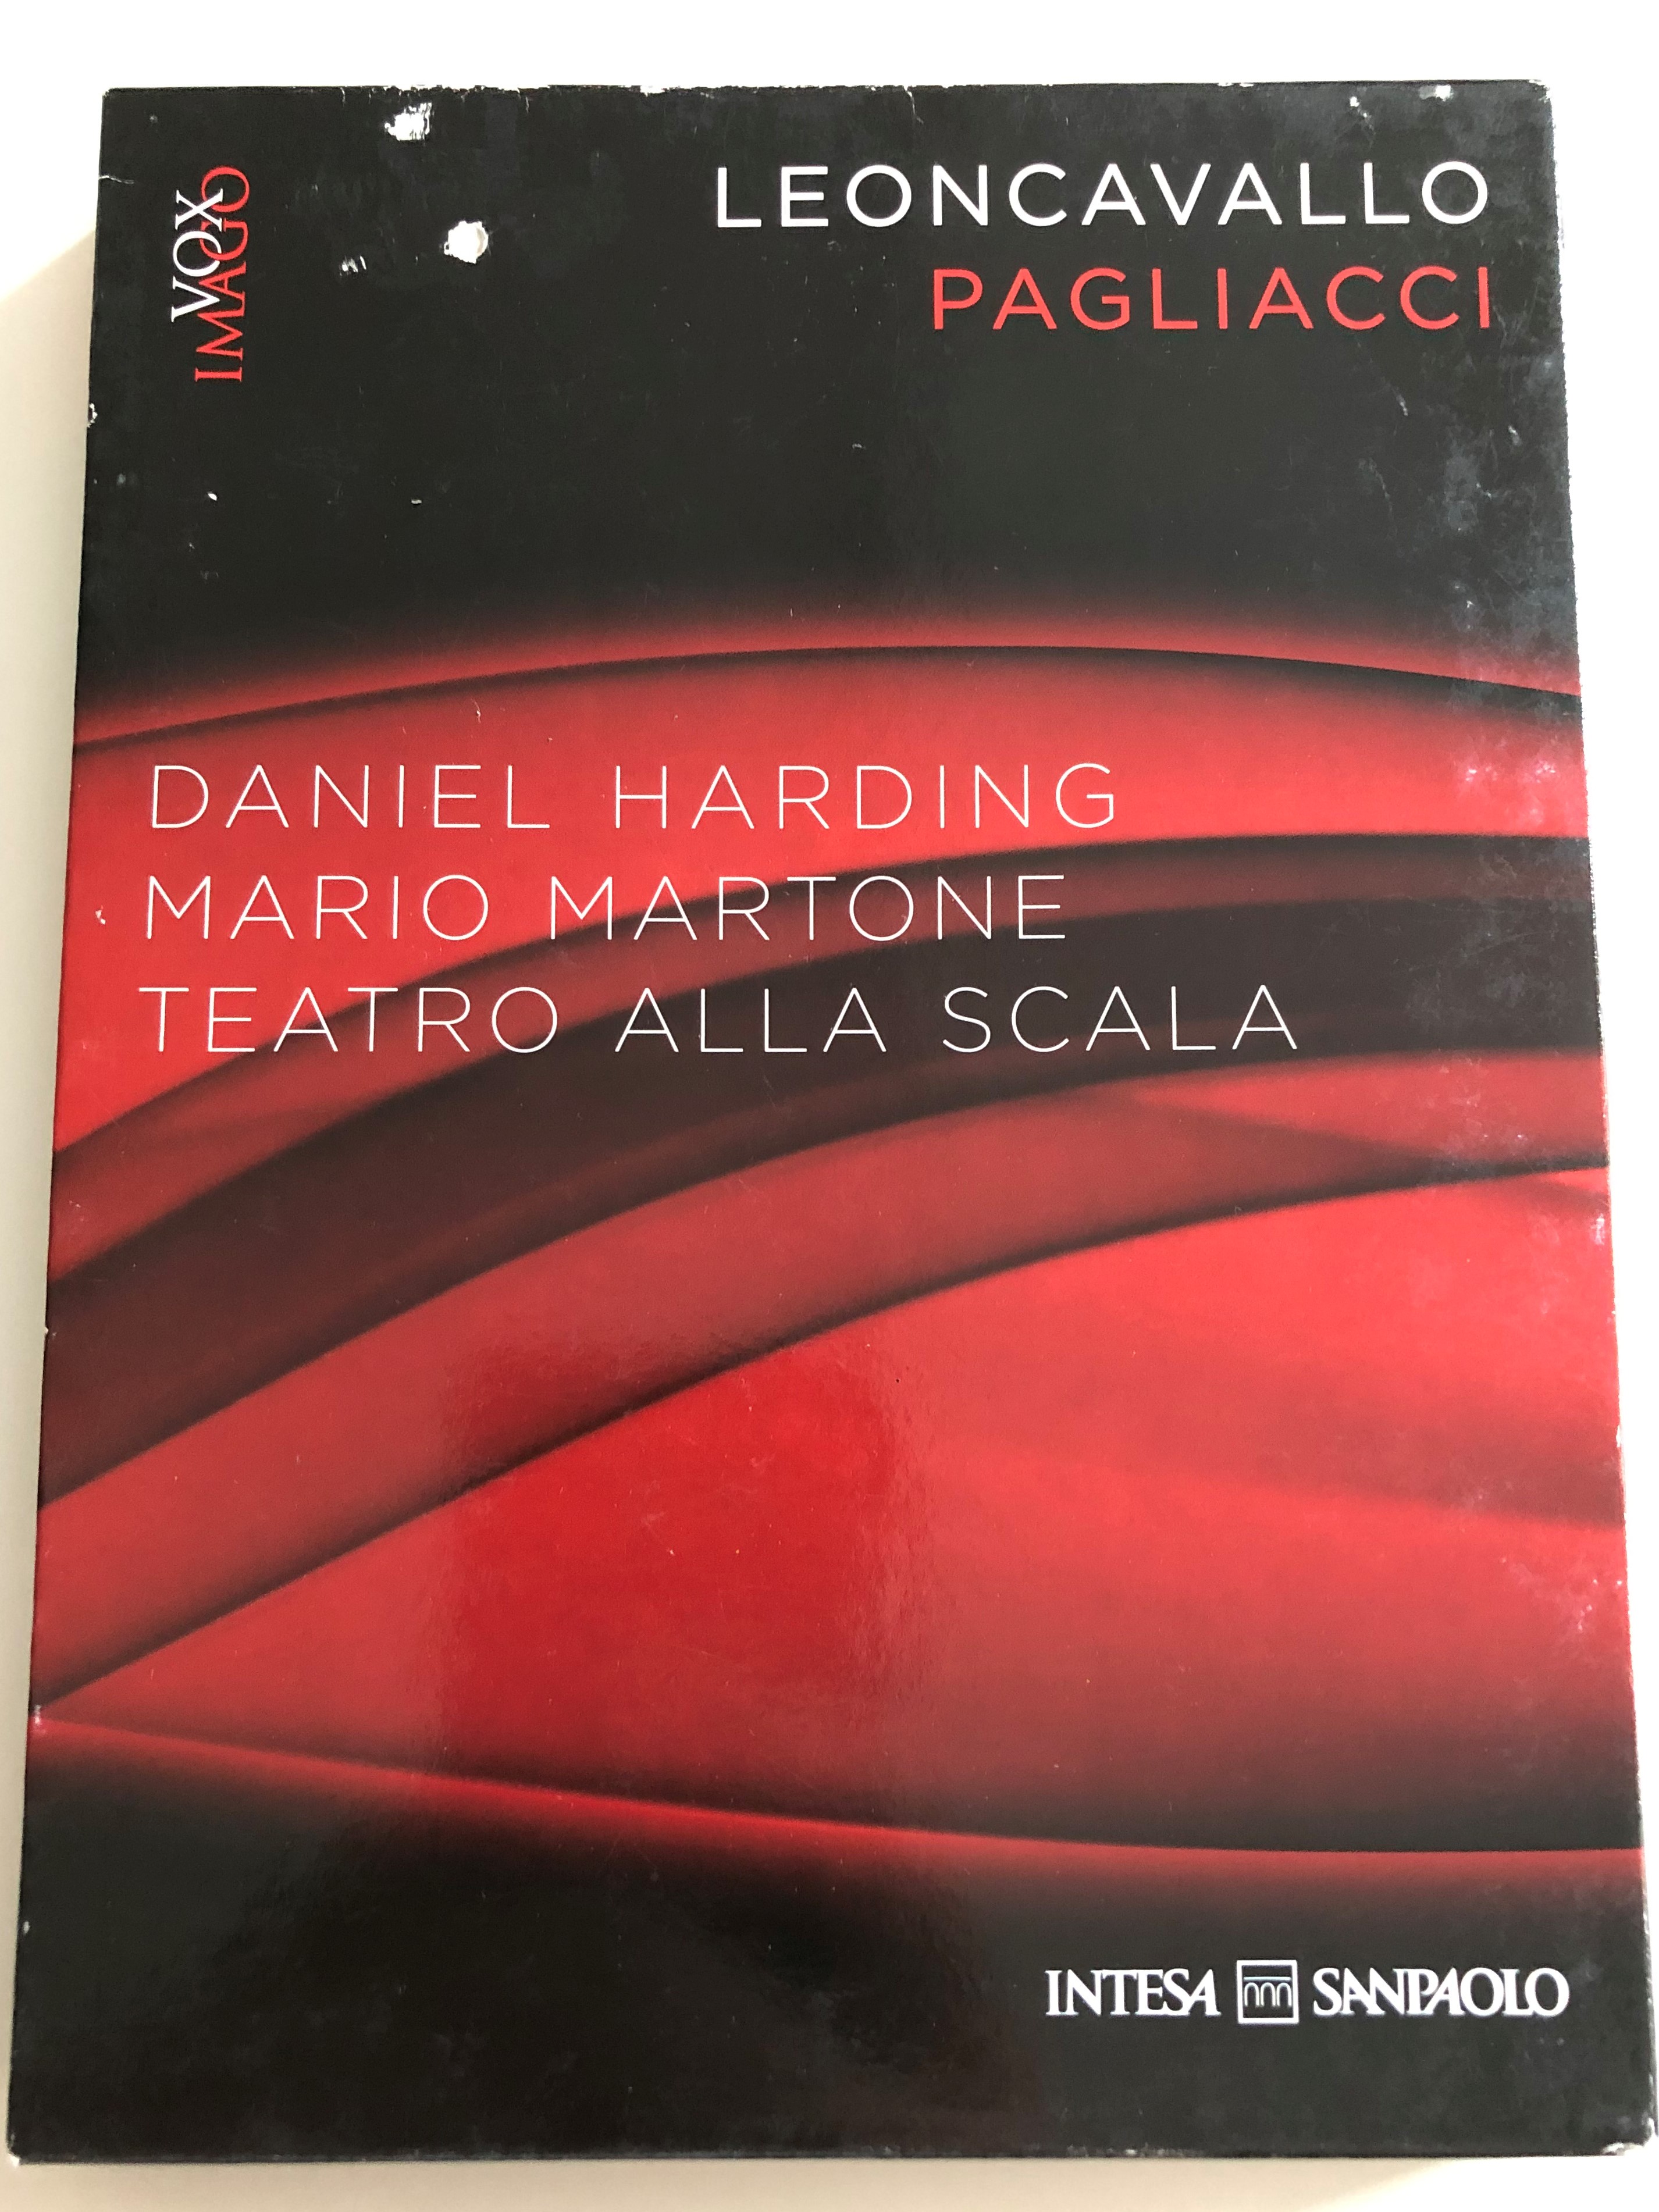 leoncavallo-pagliacci-dvd-cd-2011-directed-by-daniel-harding-mario-martone-teatro-alla-scala-pagliacci-senza-confii-con-philip-gossett-pagliacci-selezione-directed-by-emenuele-garofalo-1-.jpg